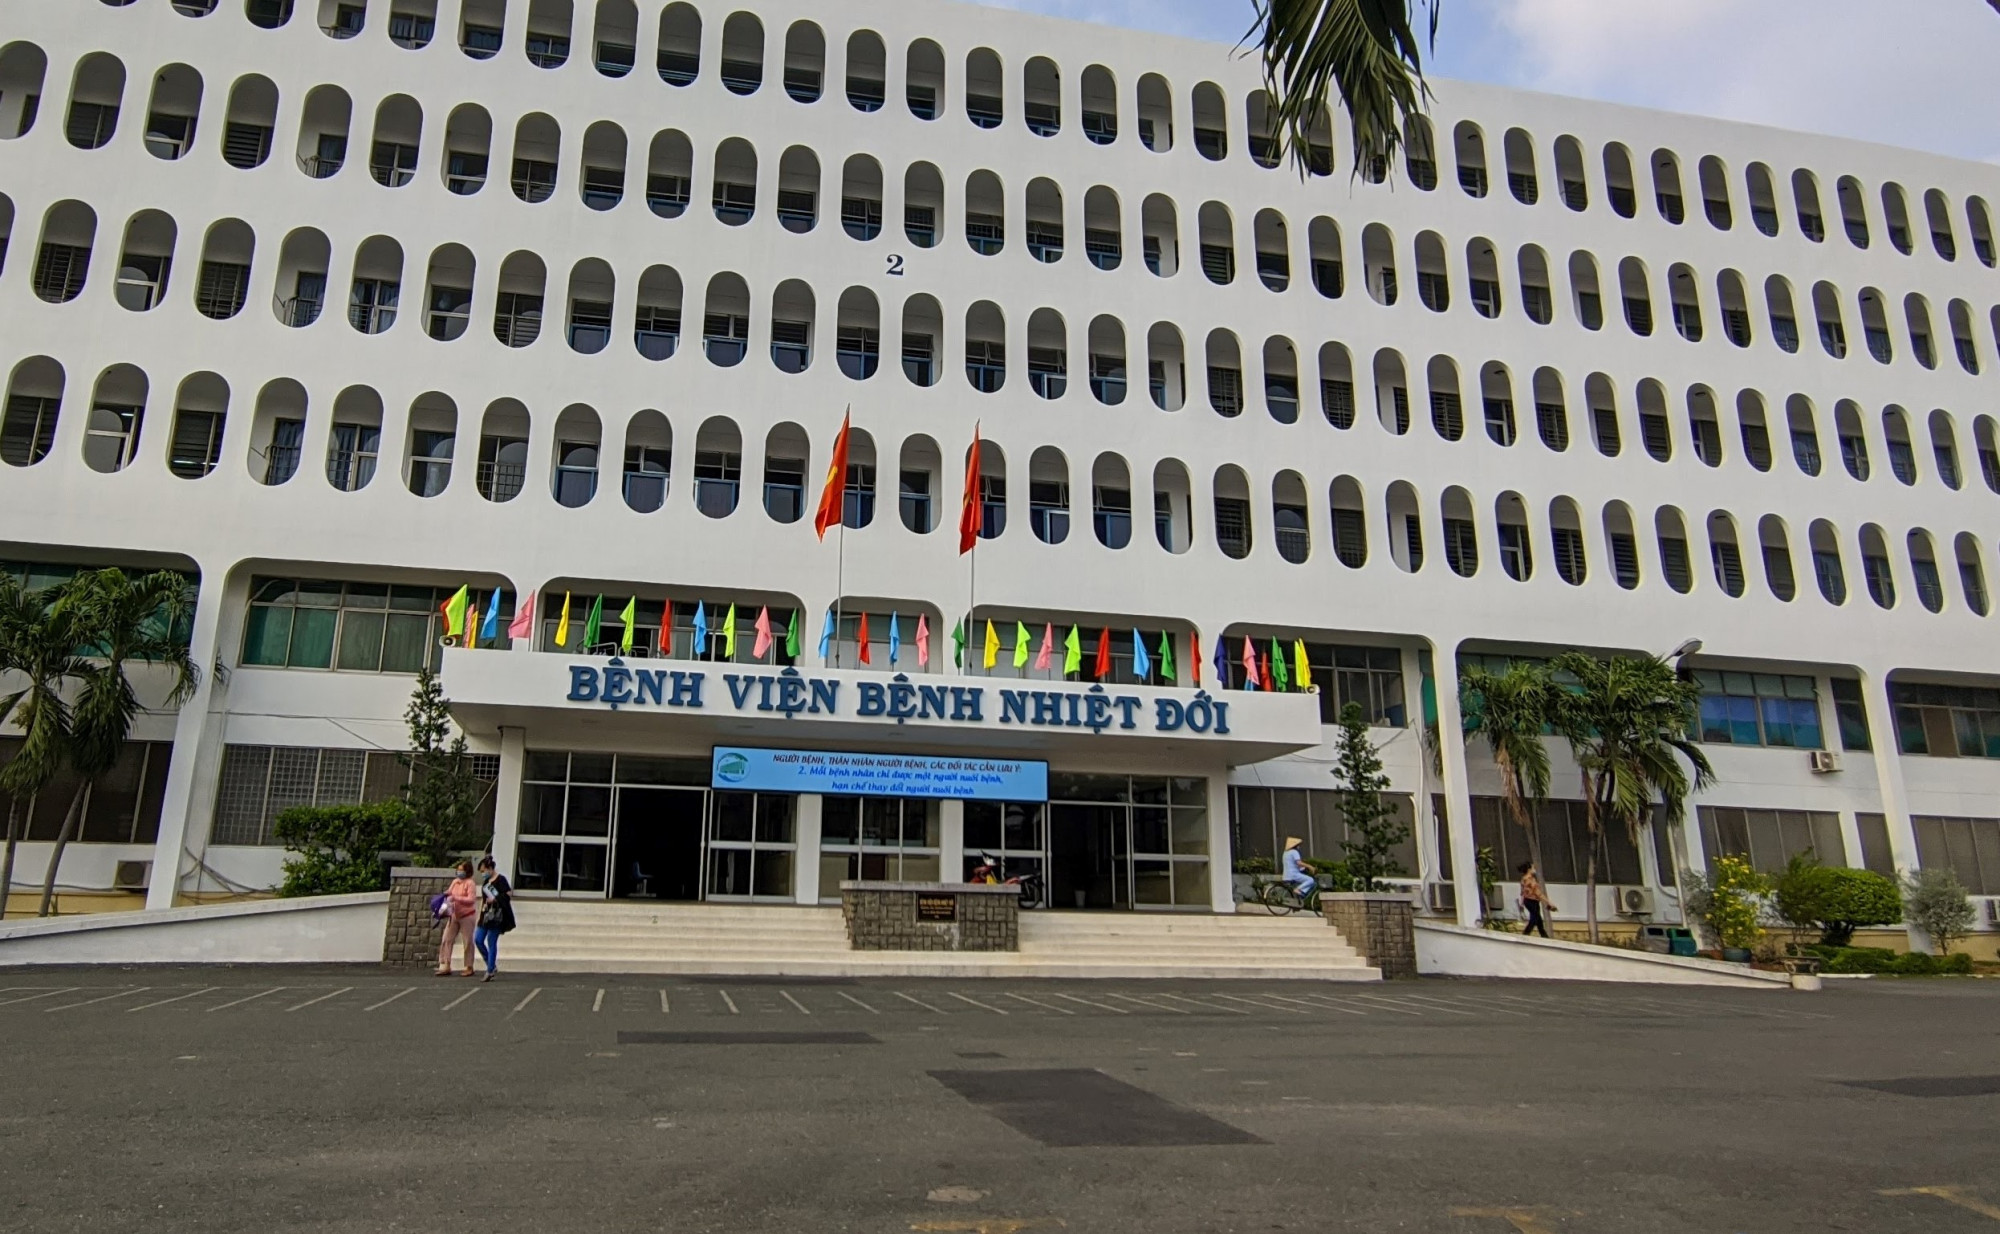 Bệnh viện Bệnh nhiệt đới TPHCM được giao nhiệm vụ là bệnh viện hồi sức chuyên sâu trong điều trị COVID-19